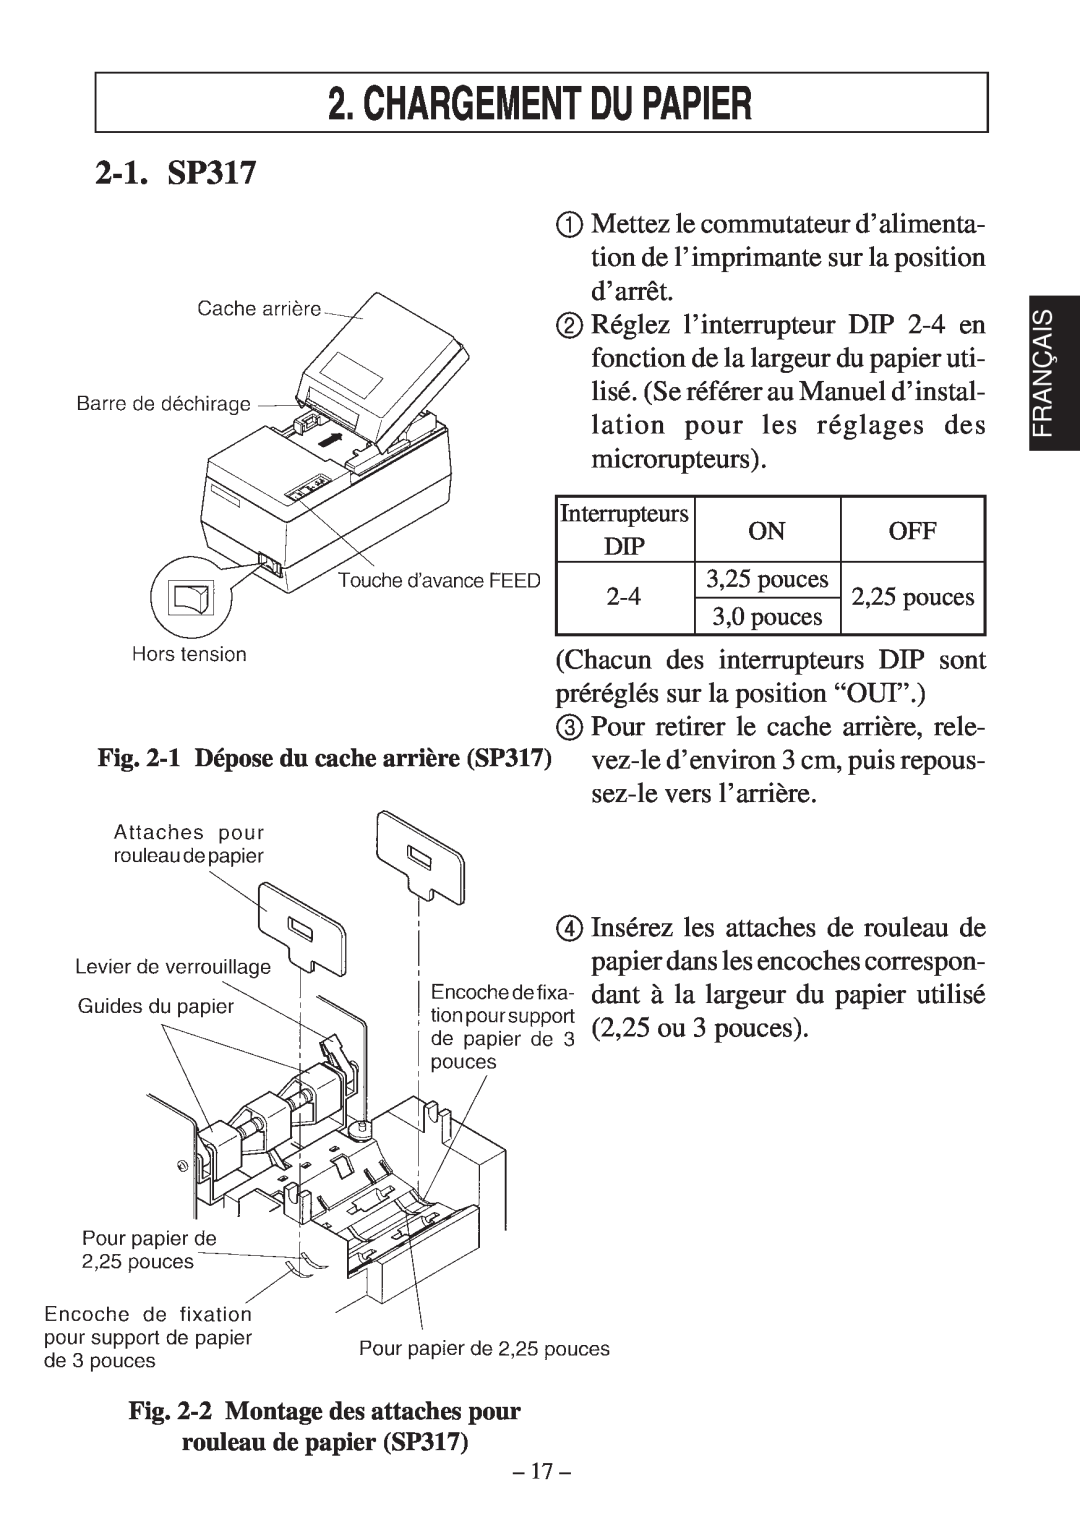 Star Micronics 347F user manual Chargement Du Papier, 2-1. SP317, 2 Montage des attaches pour rouleau de papier SP317 